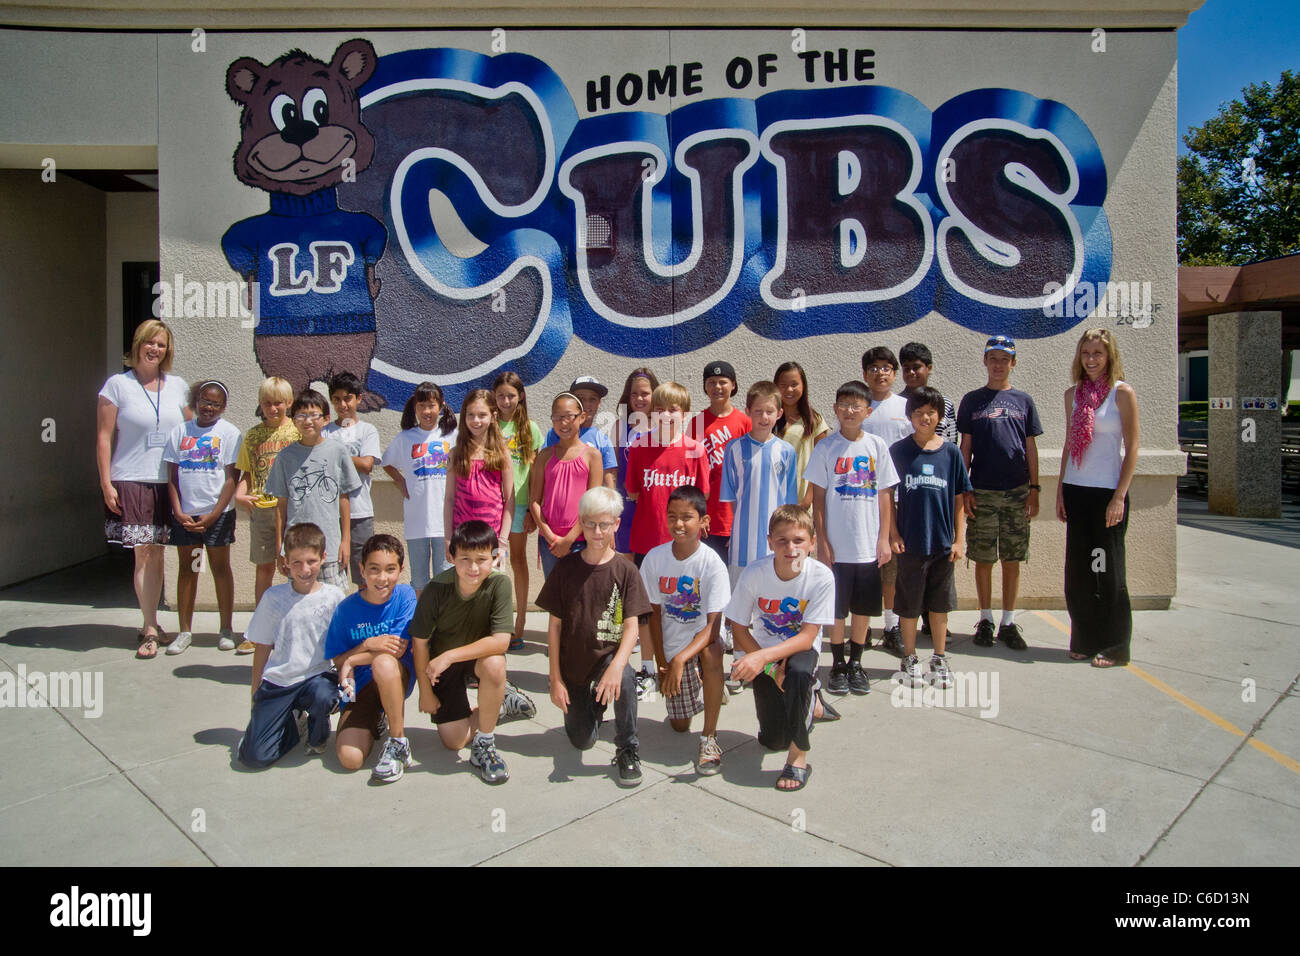 Un joyeux groupe d'élèves dans un collège d'apprentissage d'été parrainée par projet posent pour une photo de groupe avant une peinture murale dans une école locale Banque D'Images